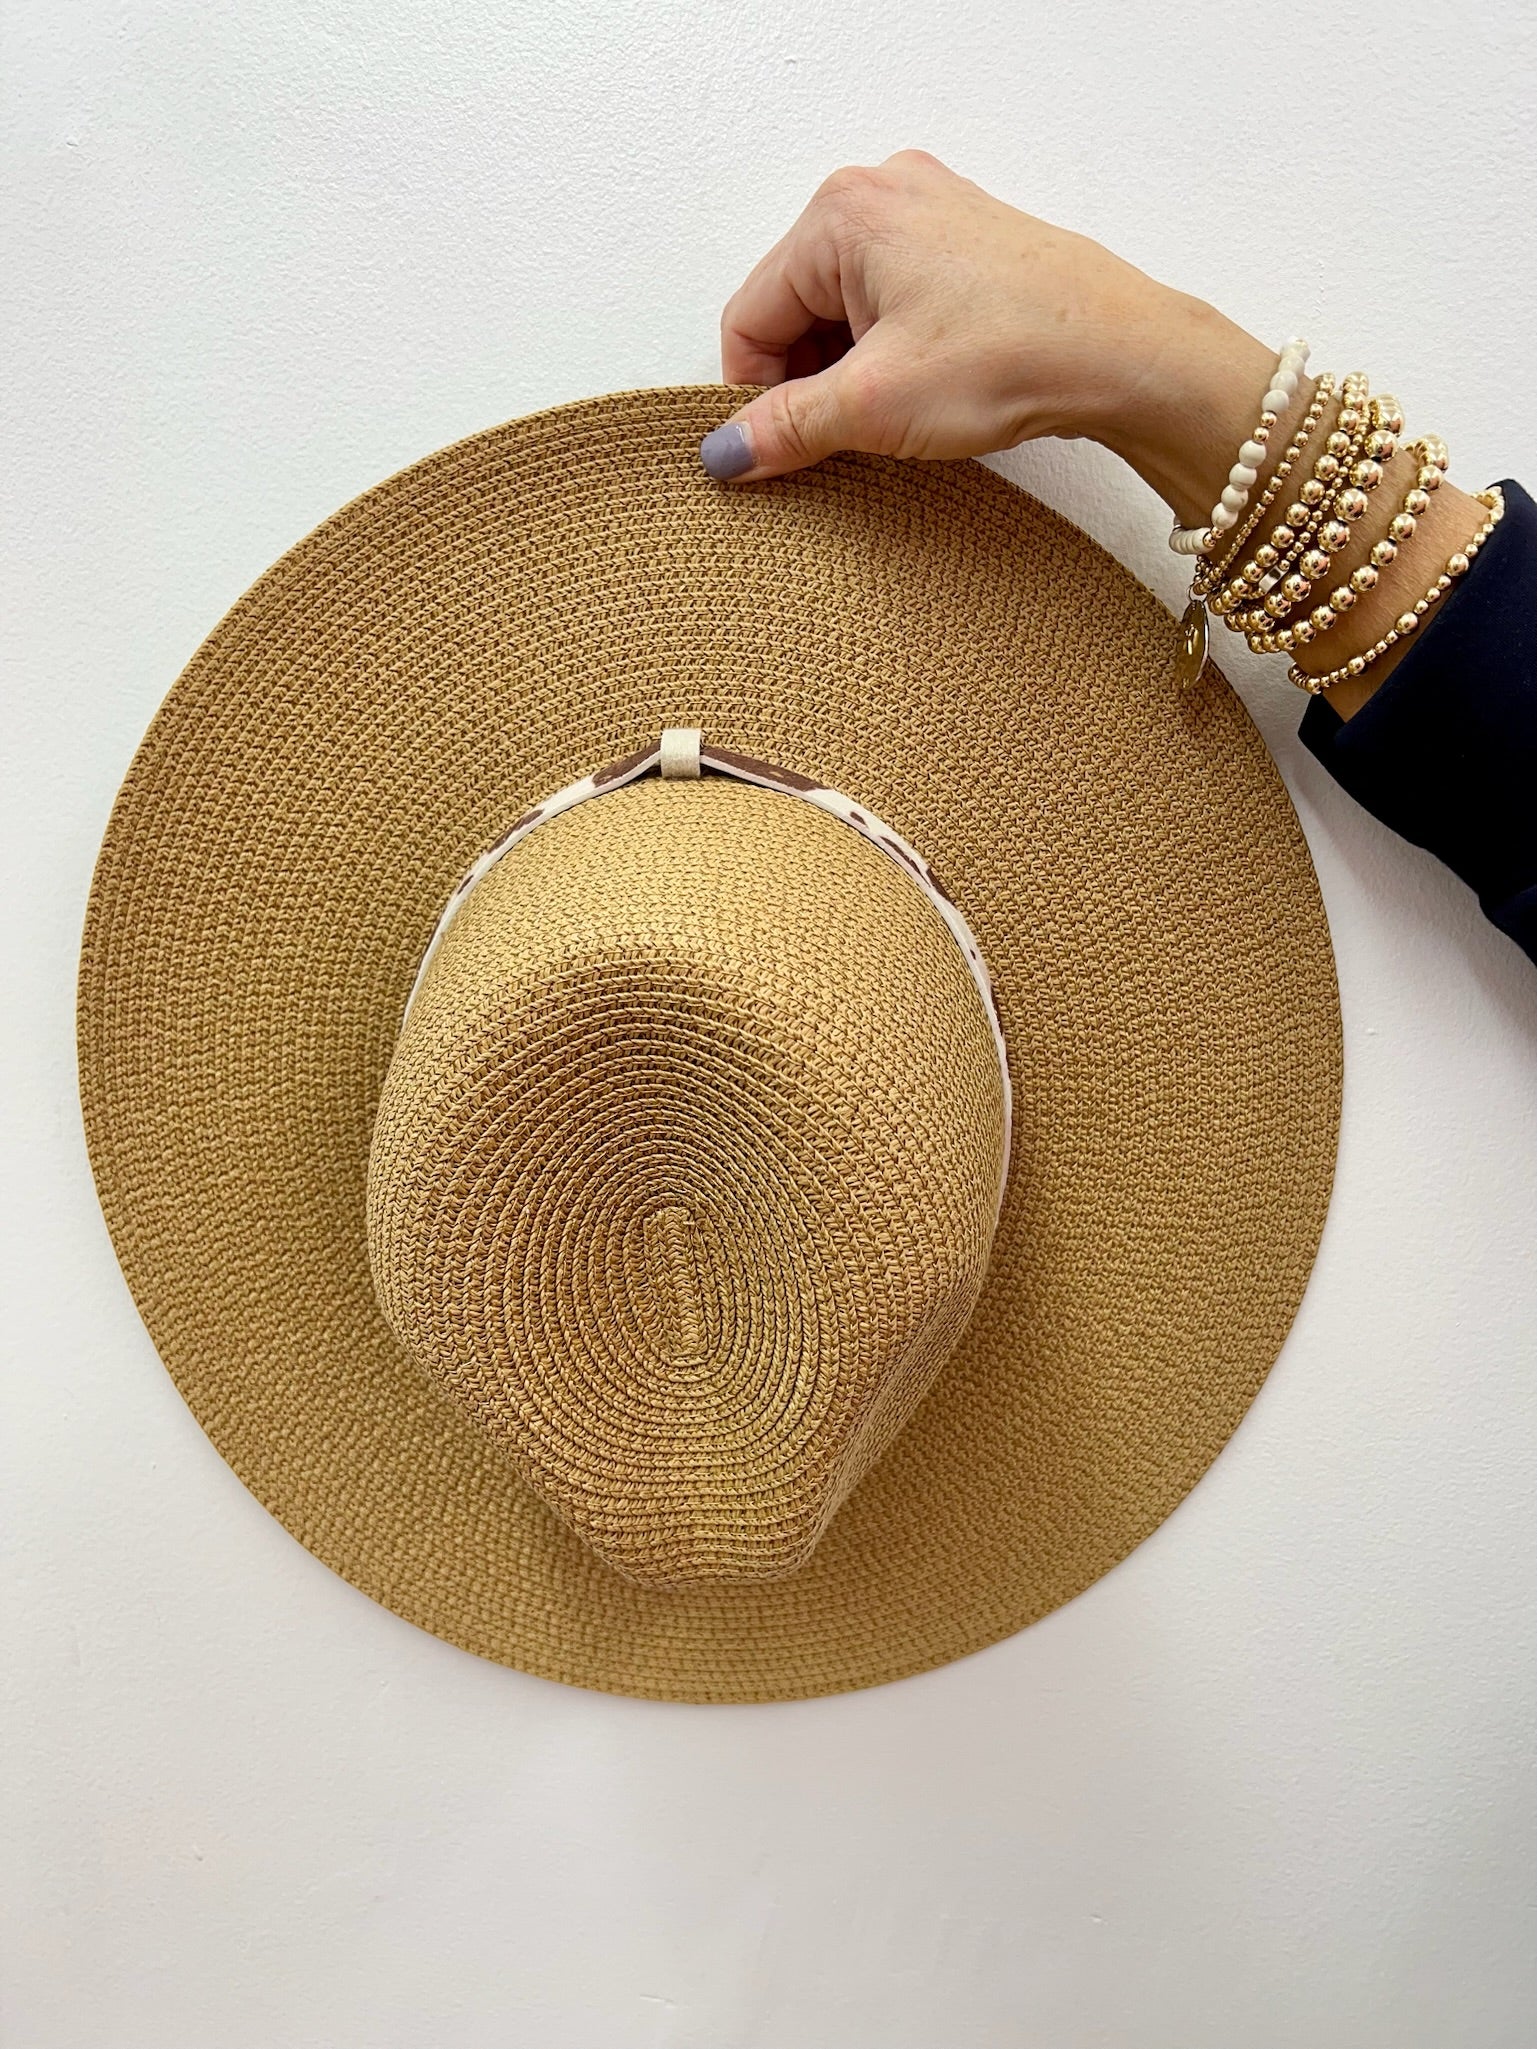 J.Crew Women's Textured Summer Straw Hat (Size One Size)